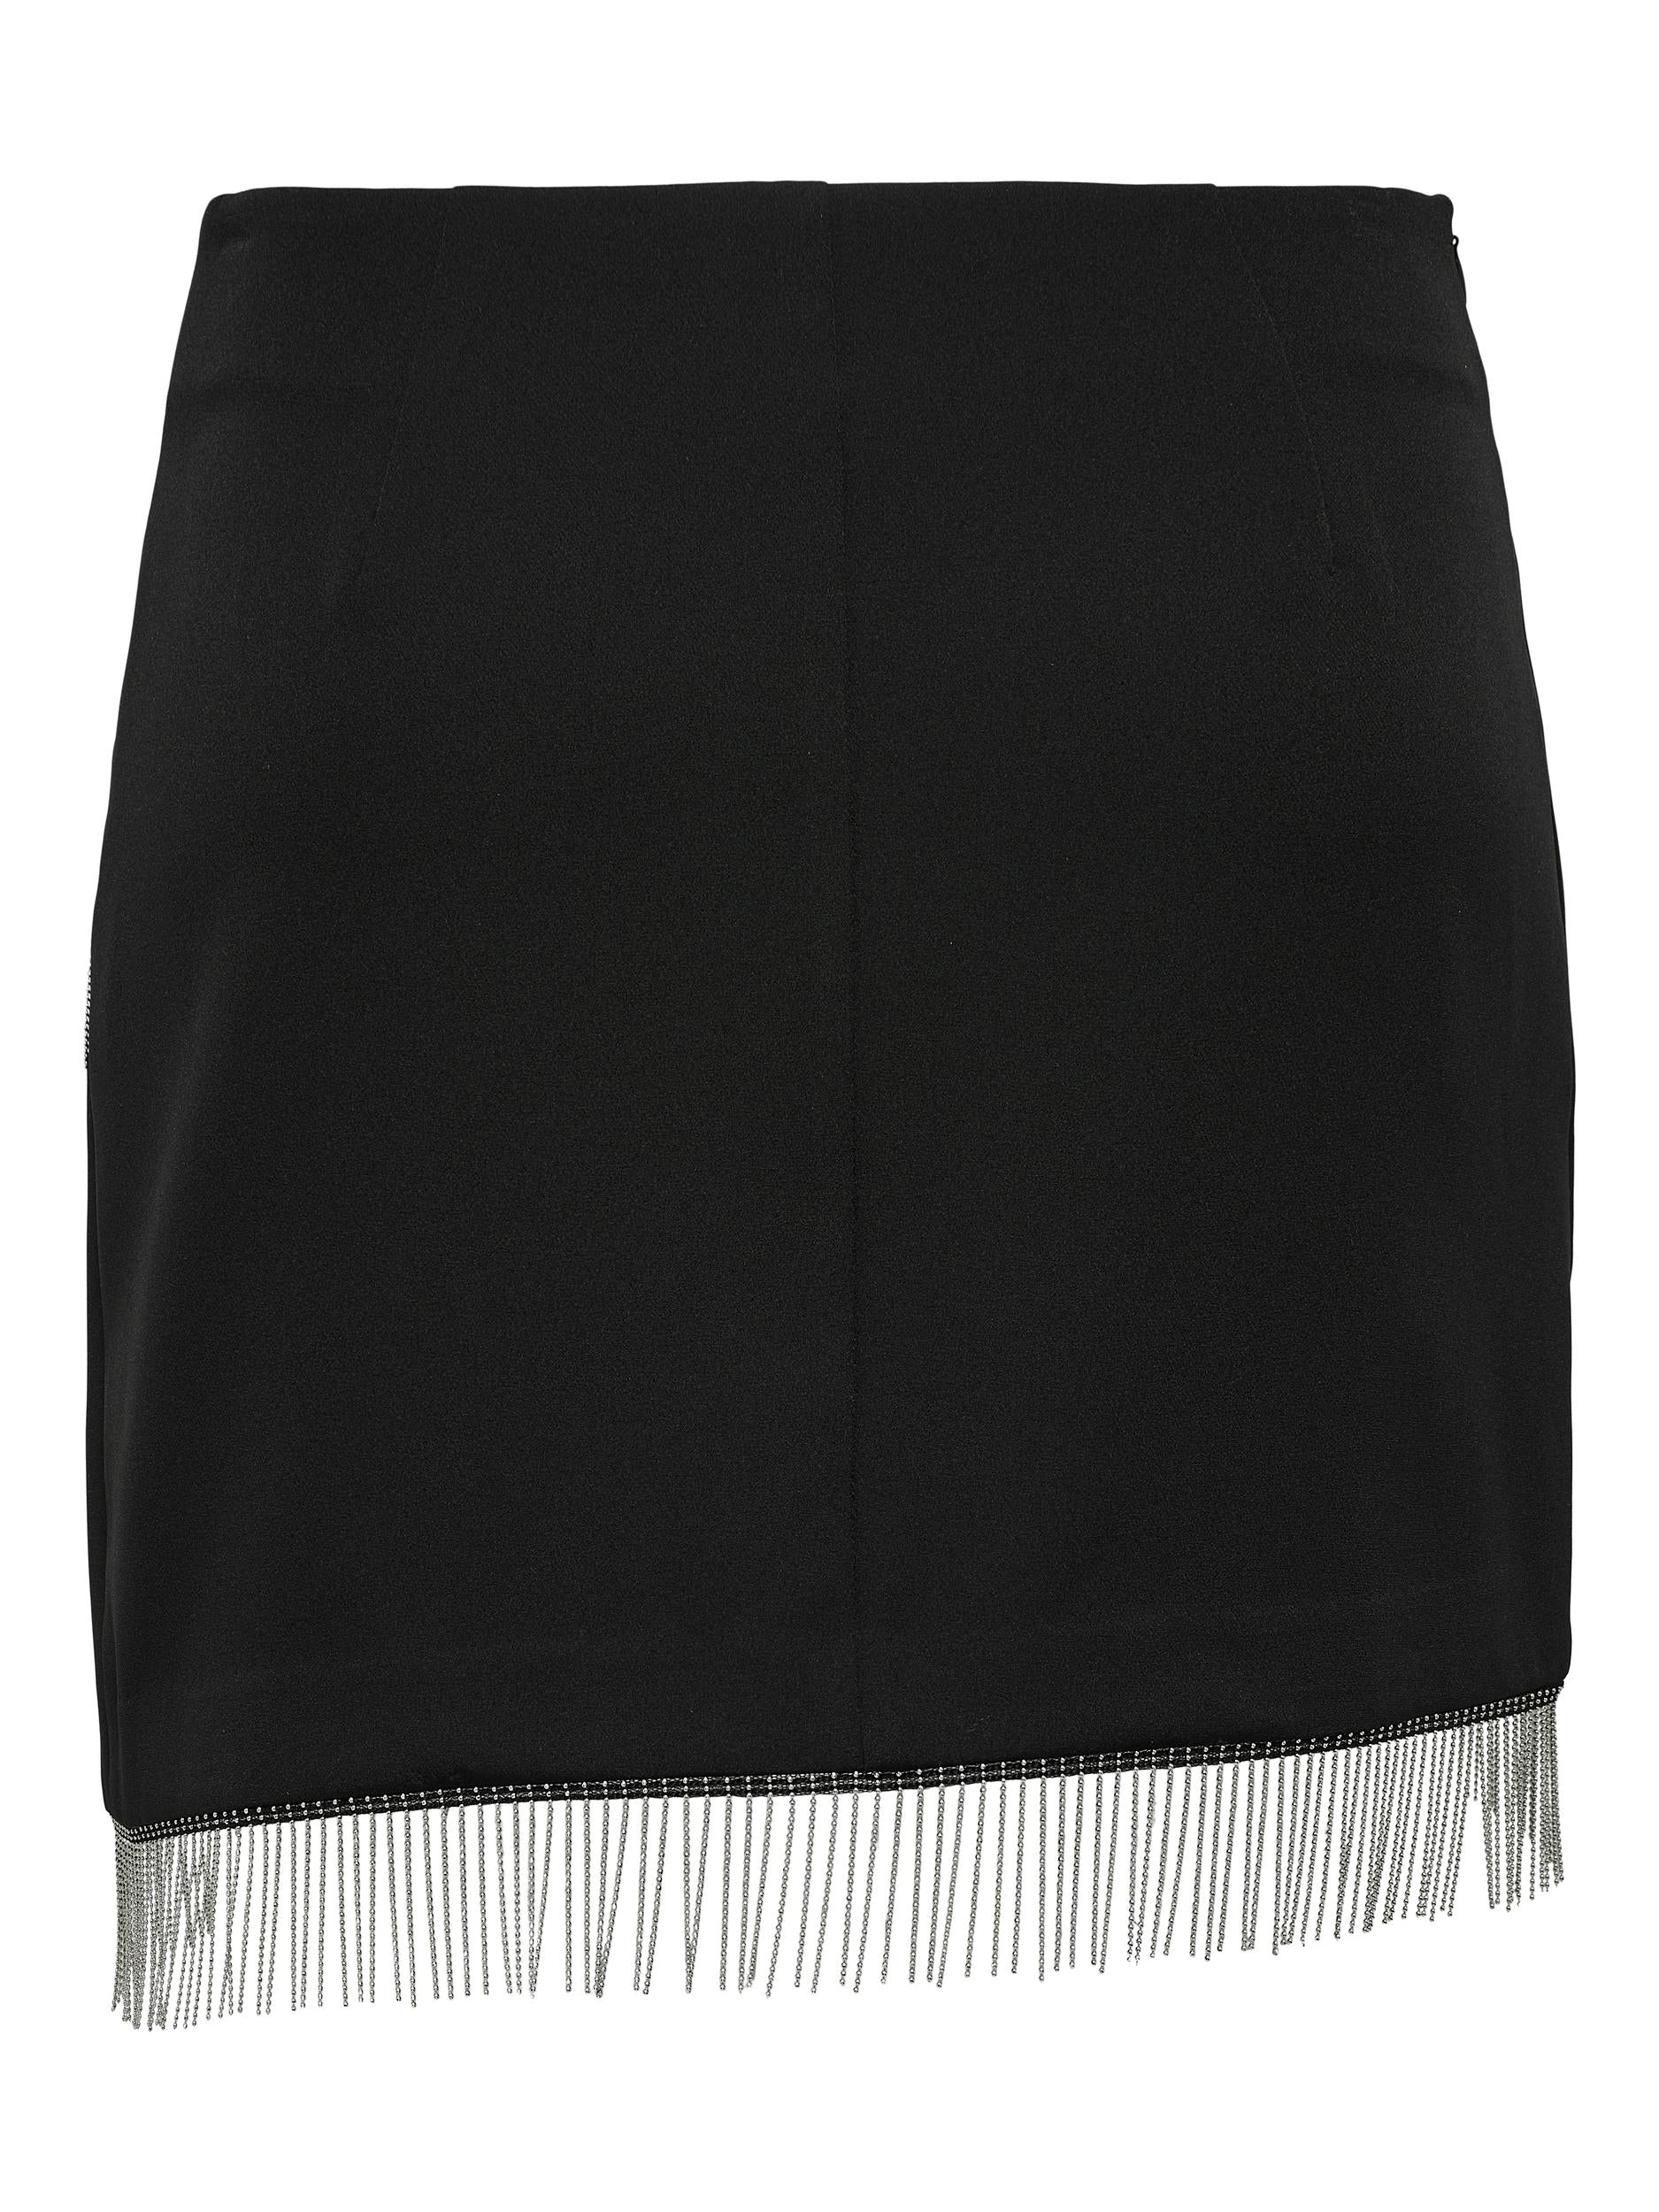 Ladies Orleen Rhinestone Mini Skirt-Black-Front View